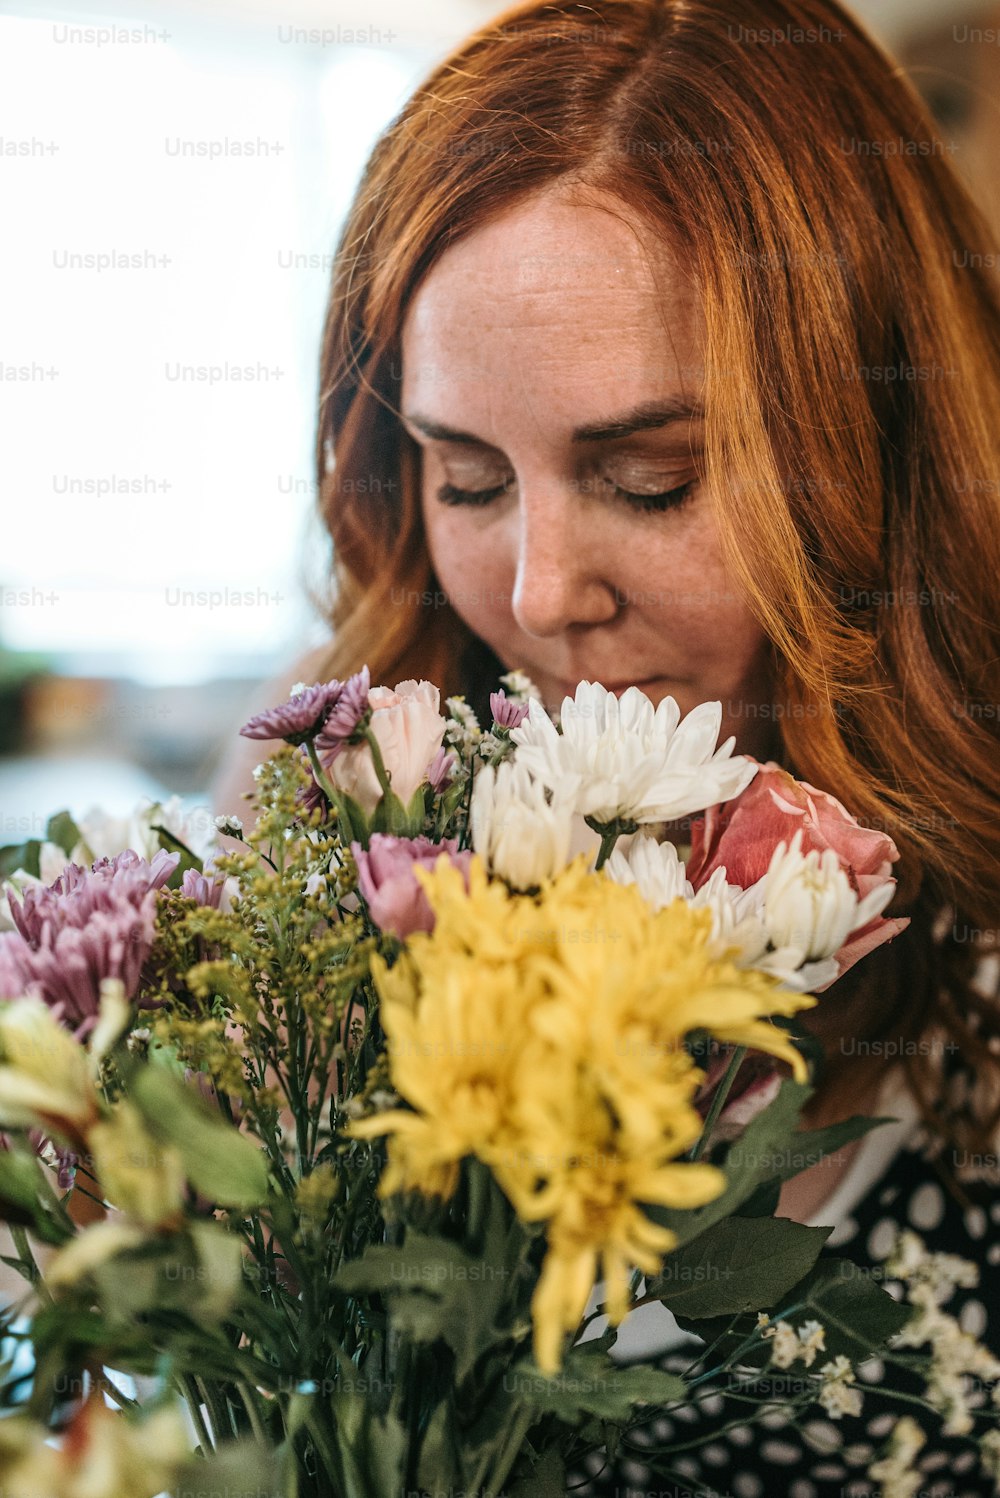 Une femme sentant un bouquet de fleurs dans un vase